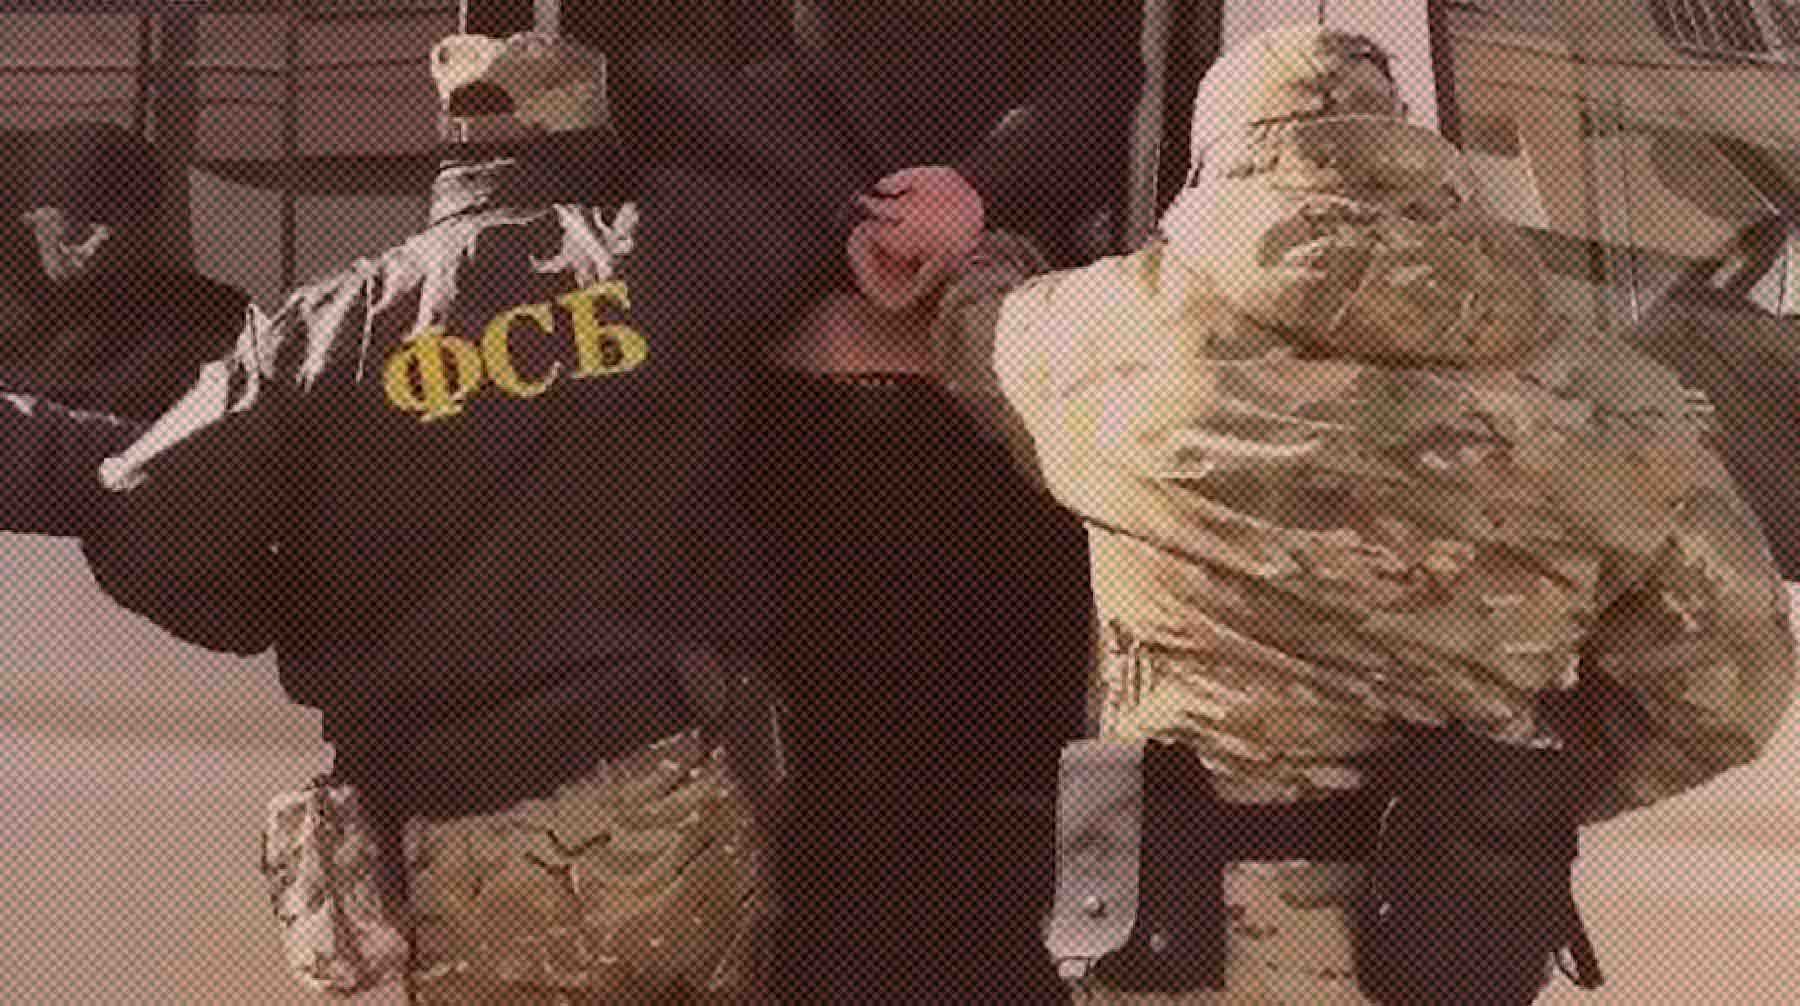 Dailystorm - ФСБ задержала в Крыму сторонника украинских неонацистов за хранение взрывчатки